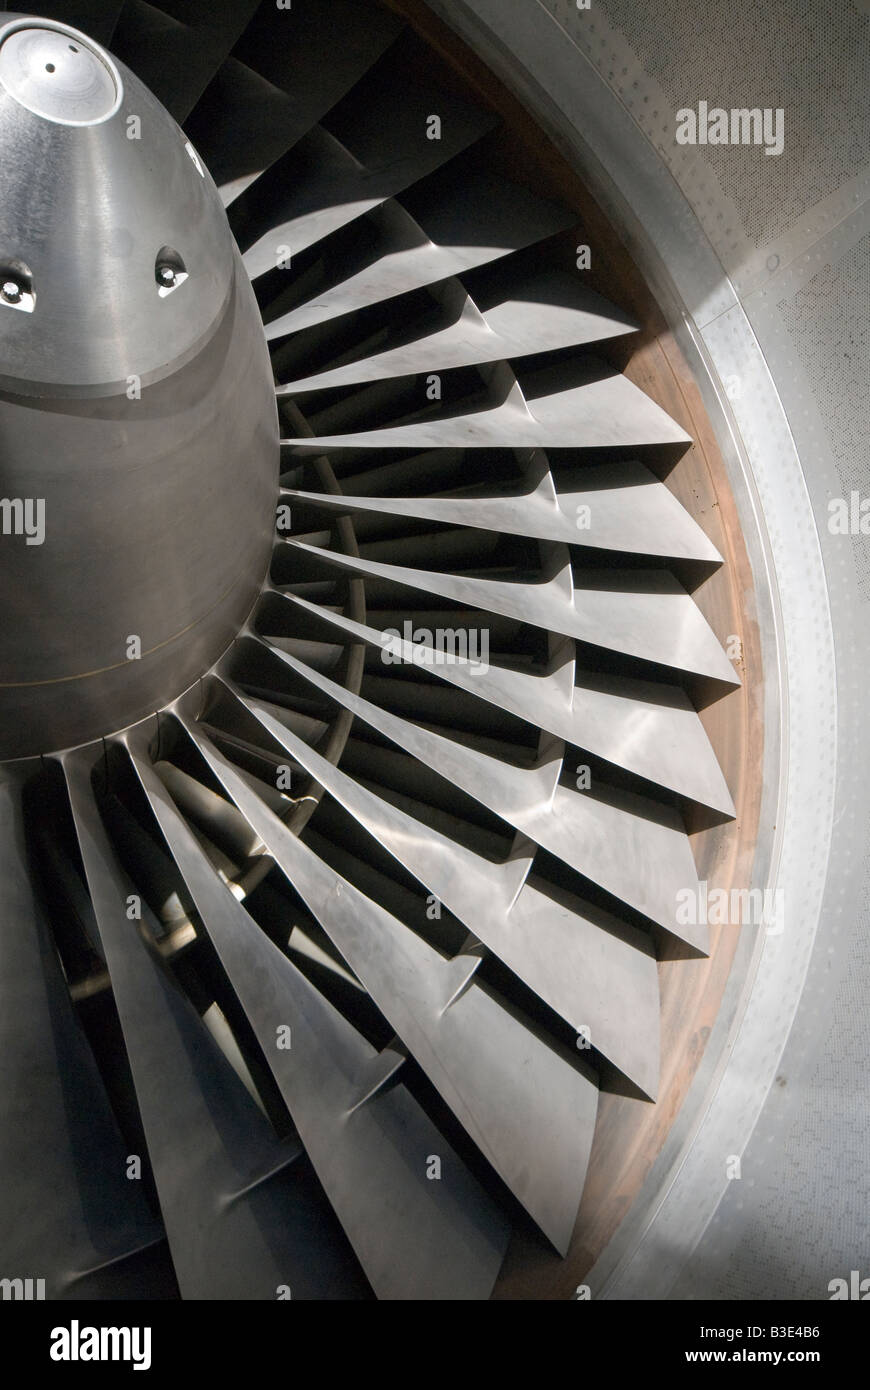 Rolls Royce RB211 turbofan engine fan blades Stock Photo